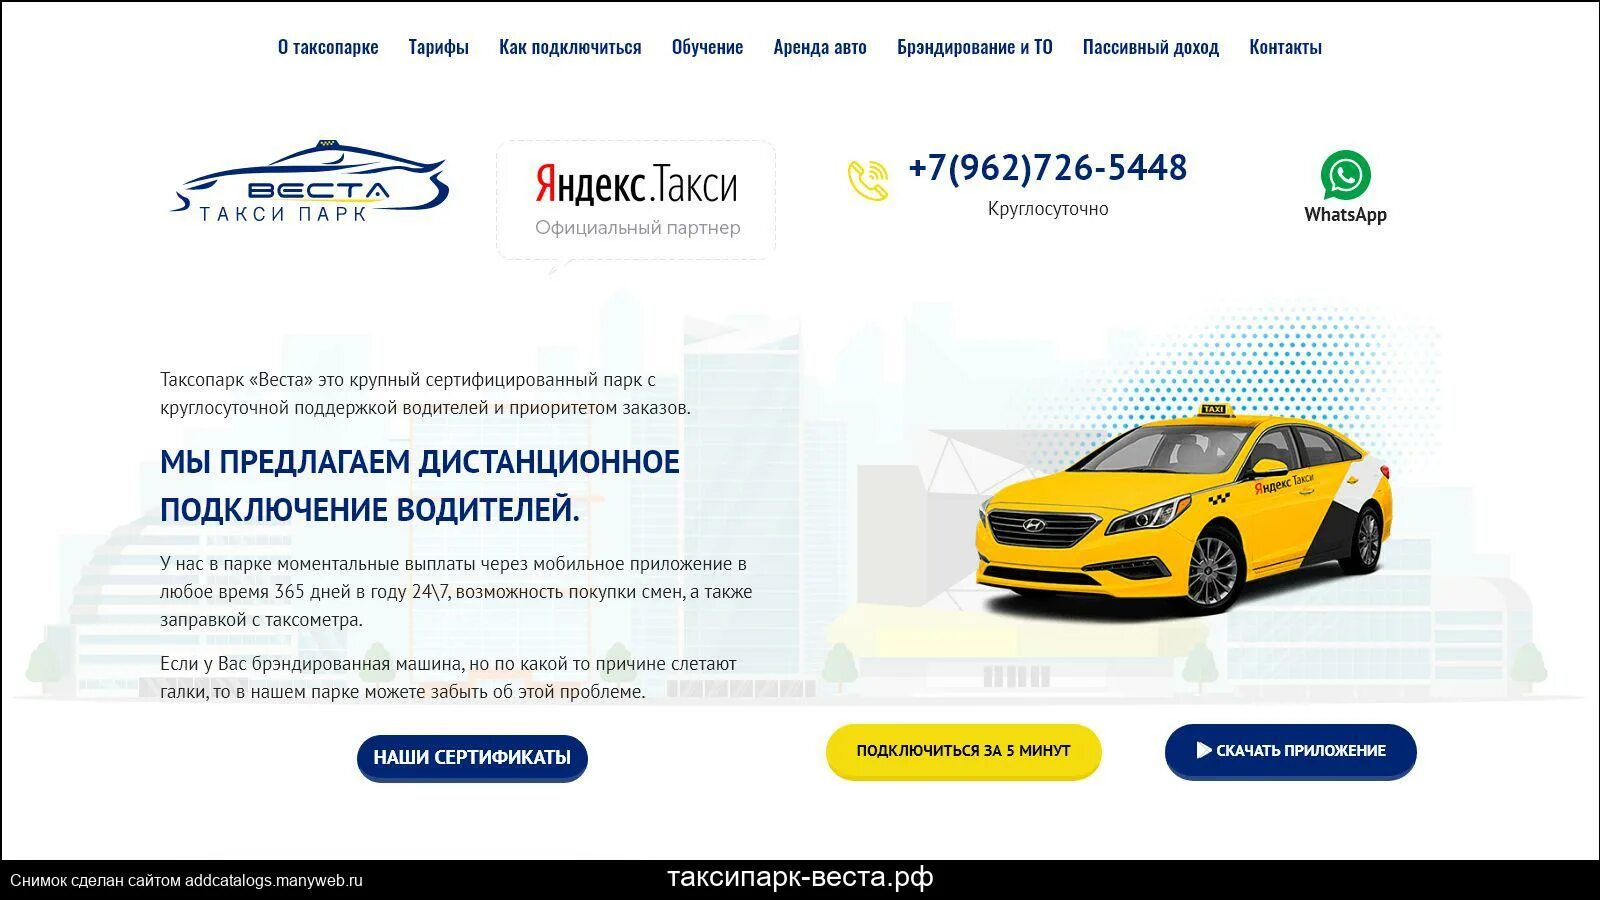 Статус парк такси. Expert Park таксопарк Москва. Дополнительные сервисы такси в России. Парк такси отзывы водителей